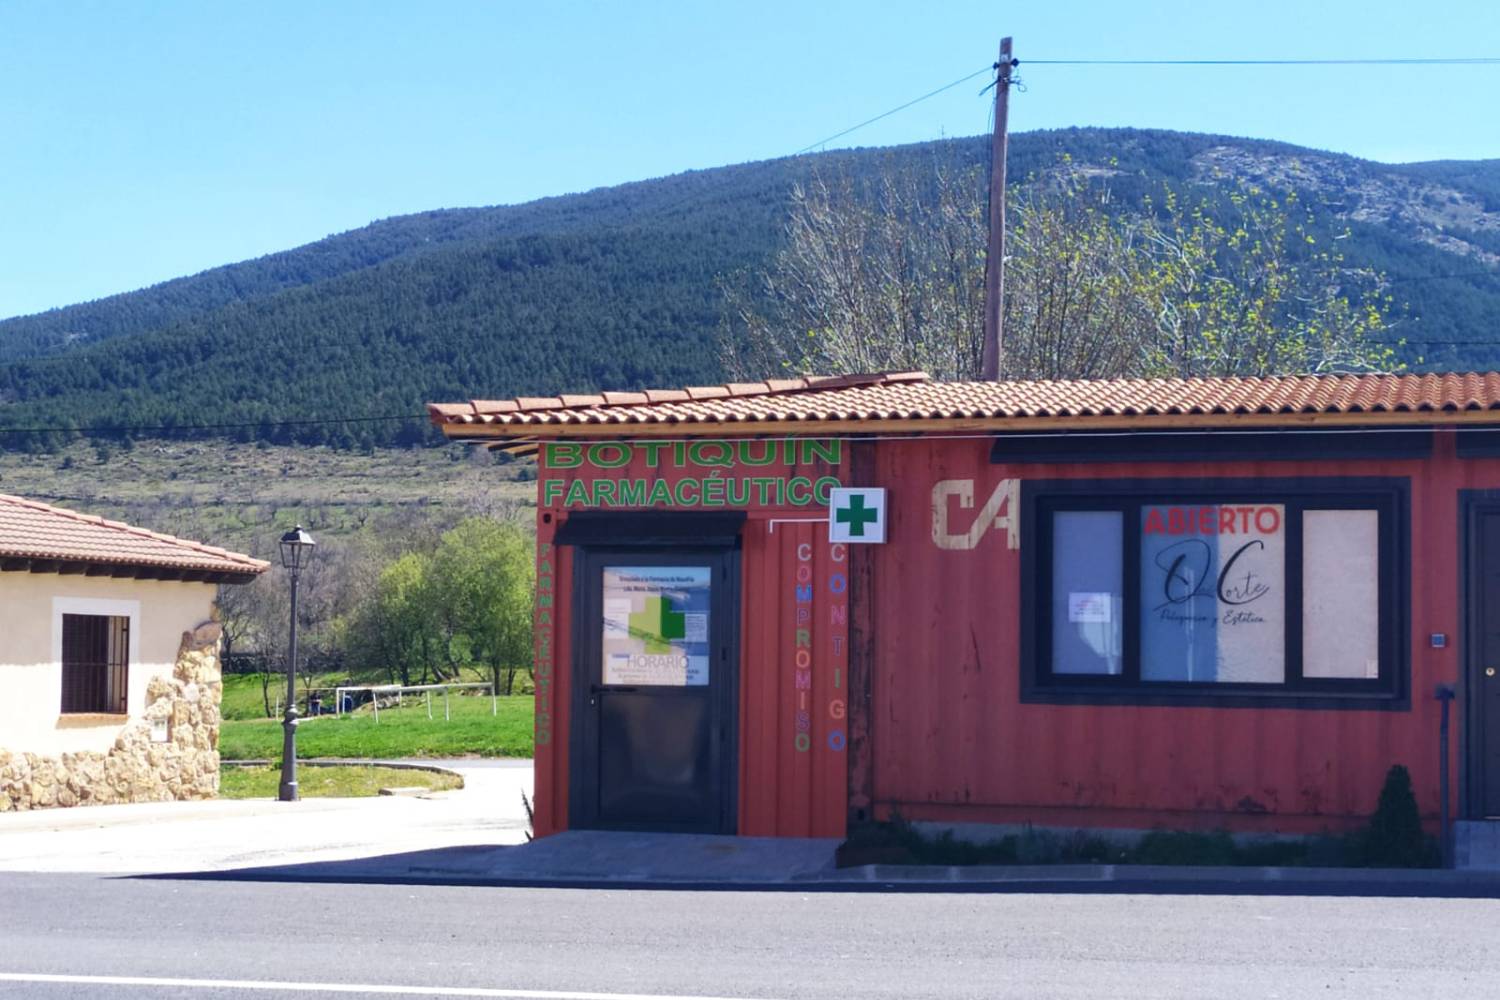 Botiquín farmacéutico en Collado Hermoso, Segovia. Foto: GEMA SUÁREZ. 